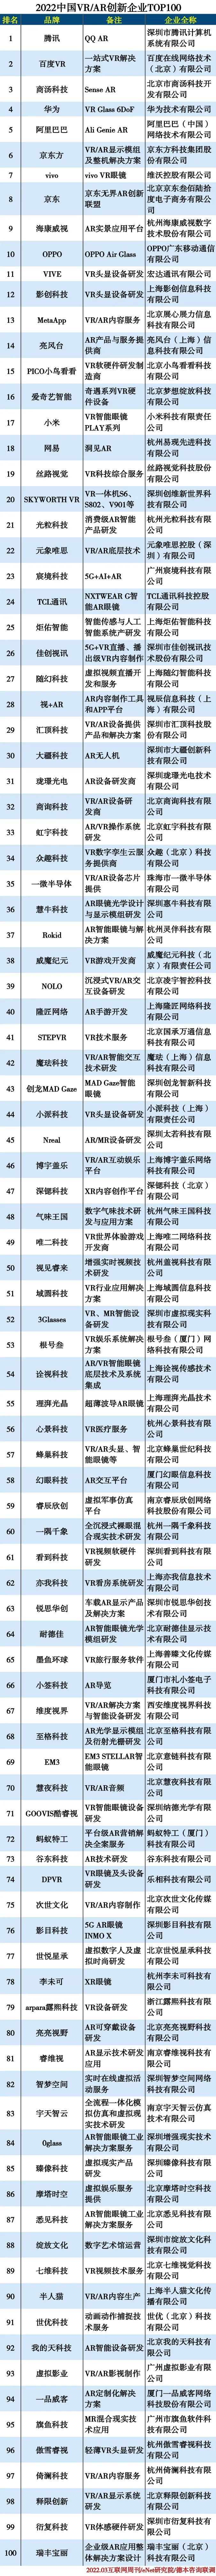 2022中国VR/AR创新企业TOP100